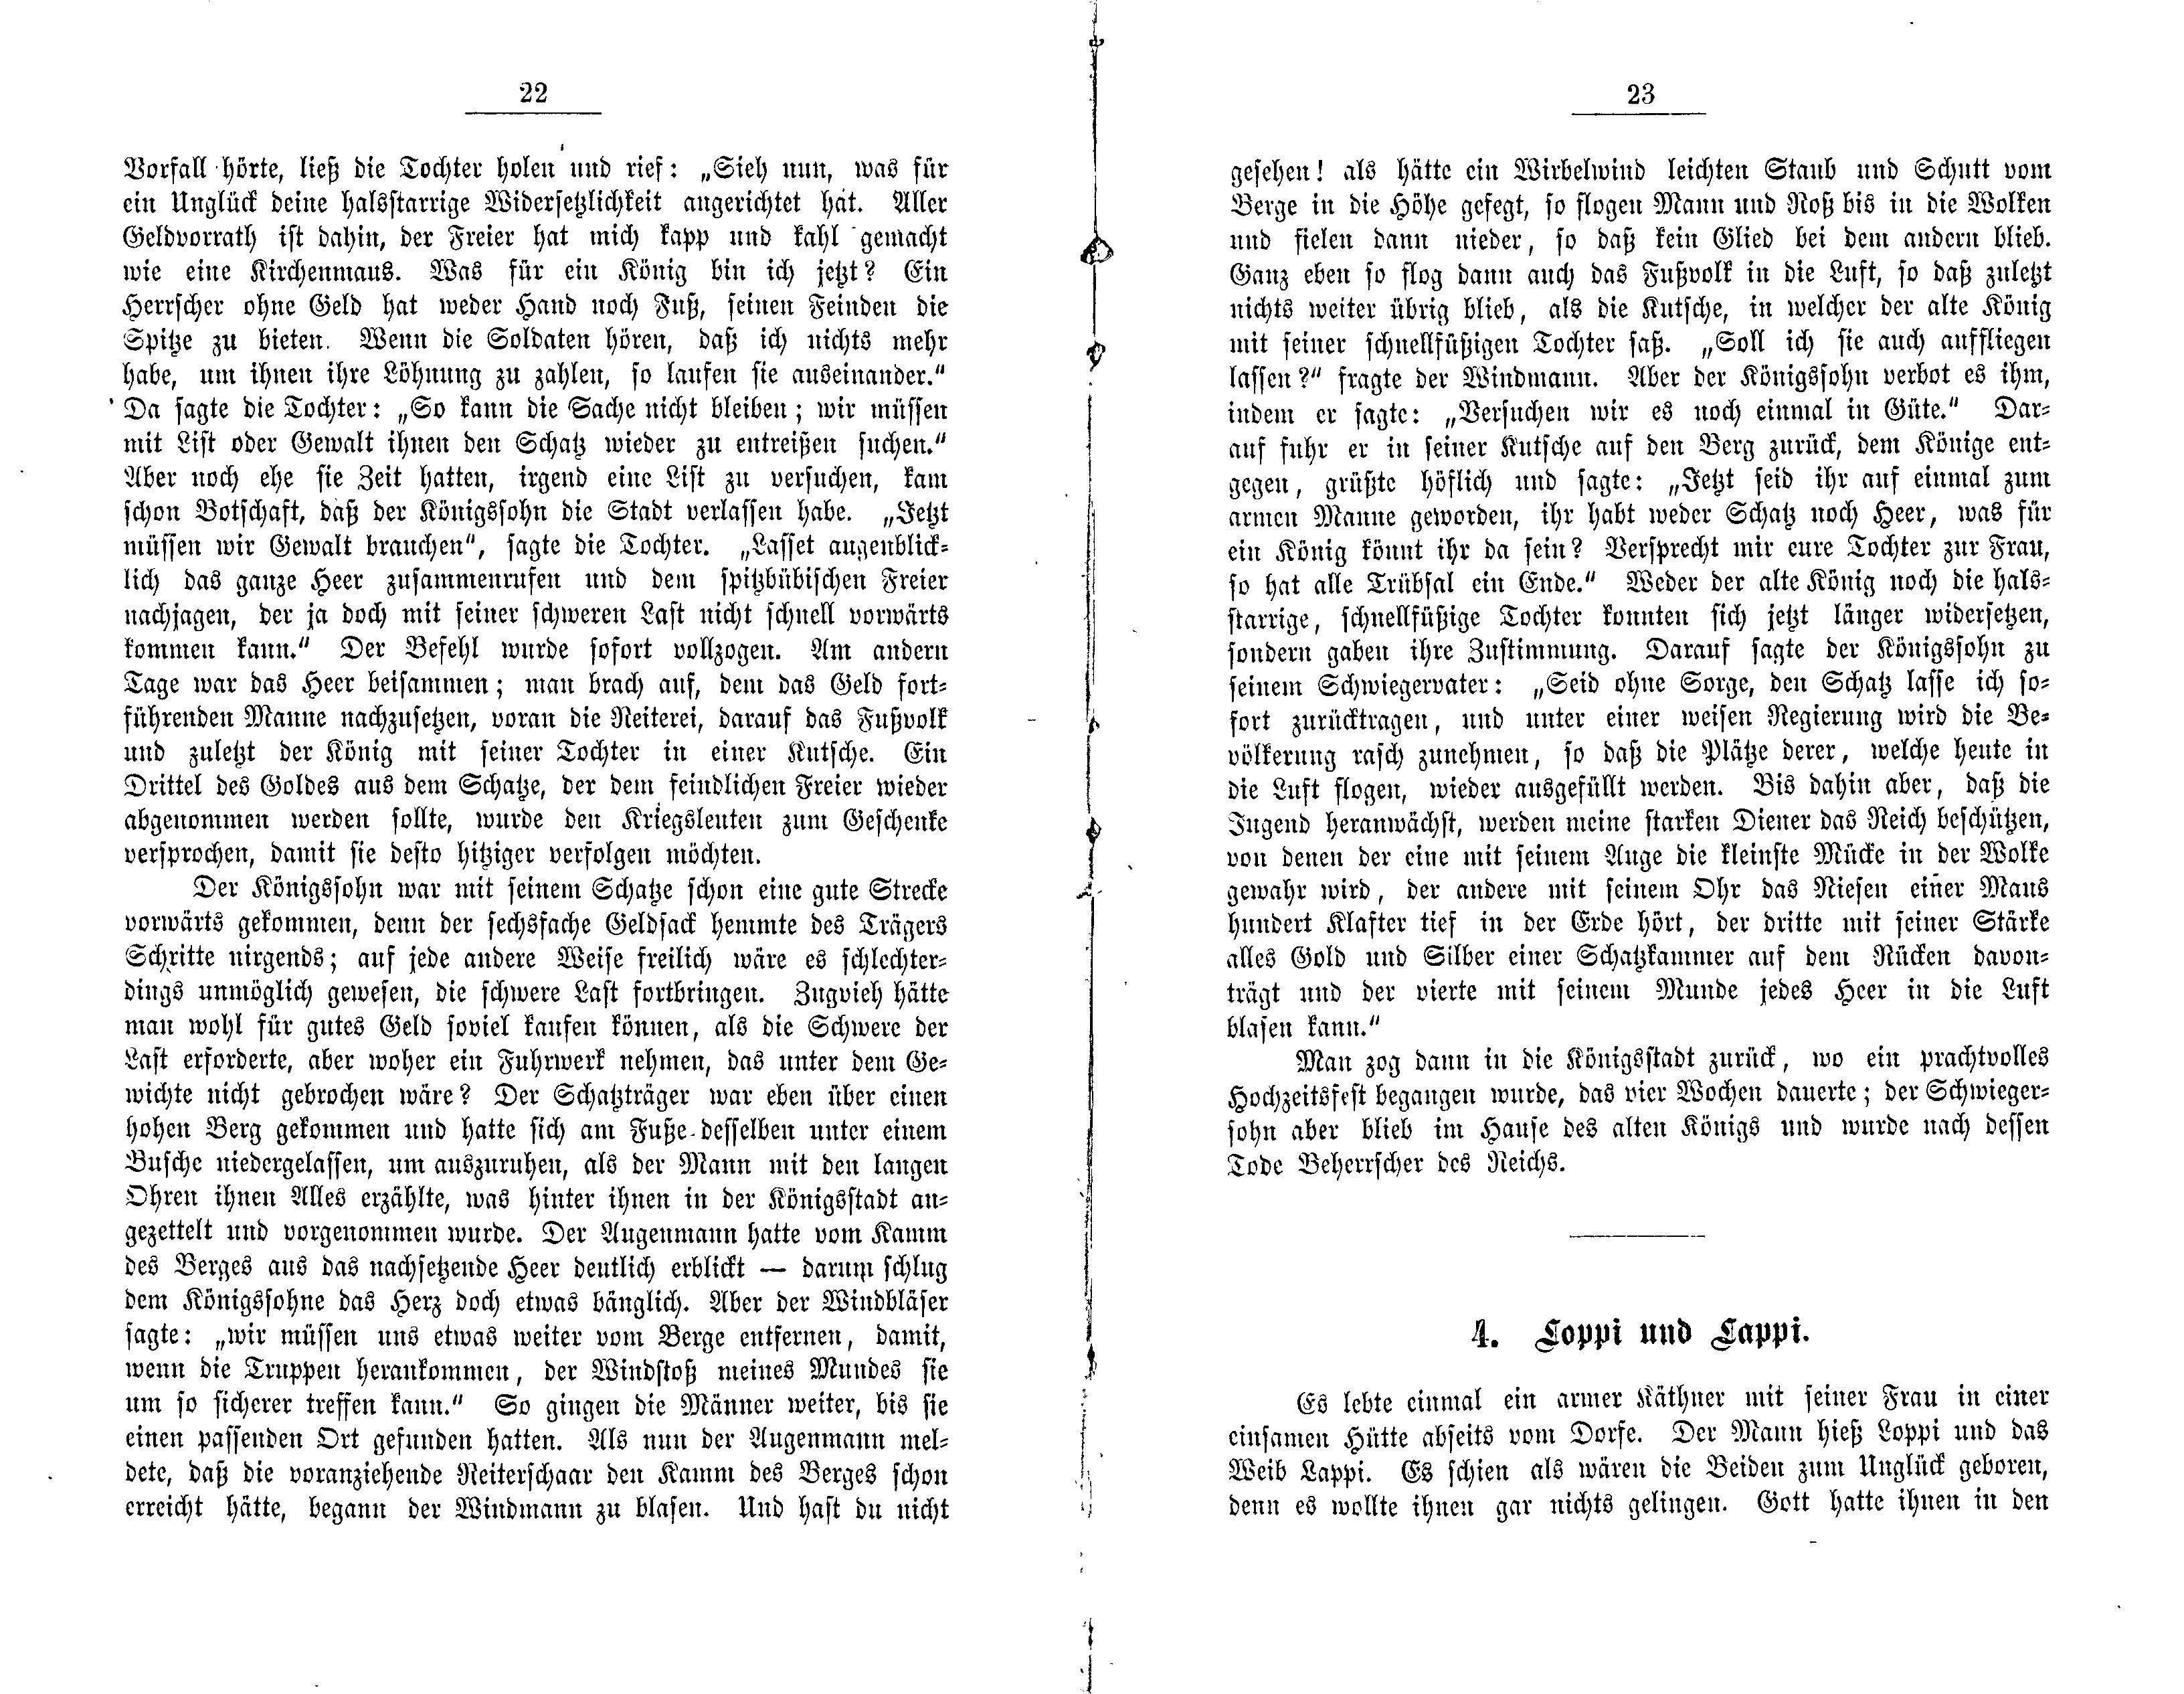 Loppi und Lappi (1881) | 1. (22-23) Main body of text